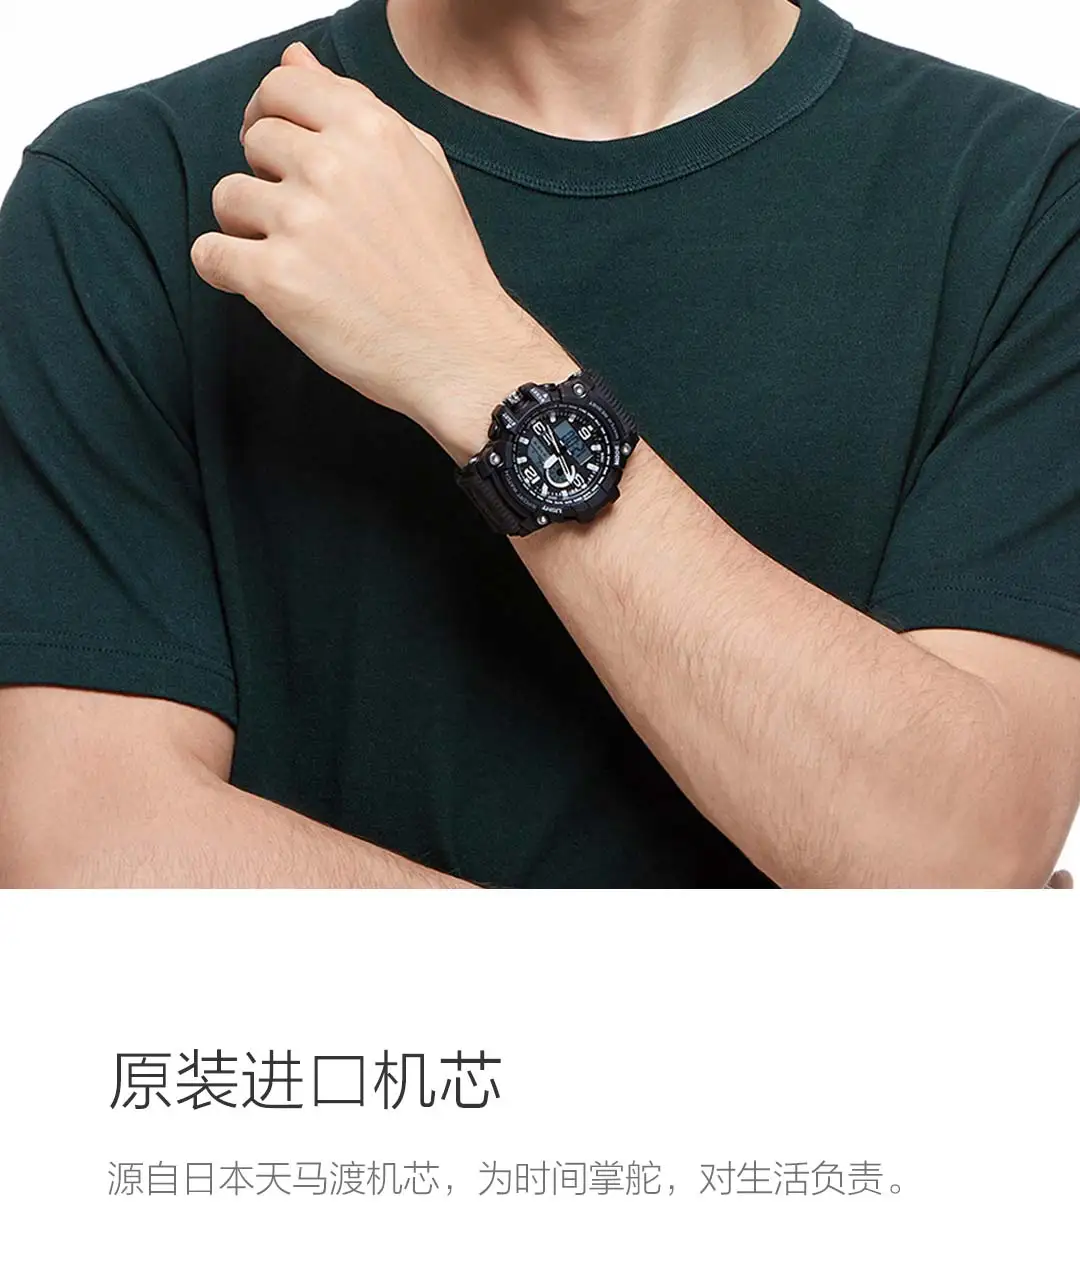 Xiaomi 50ATM водонепроницаемые износостойкие электронные часы, светящийся дисплей с календарем и обратным отсчетом, часы-будильник для спорта на открытом воздухе